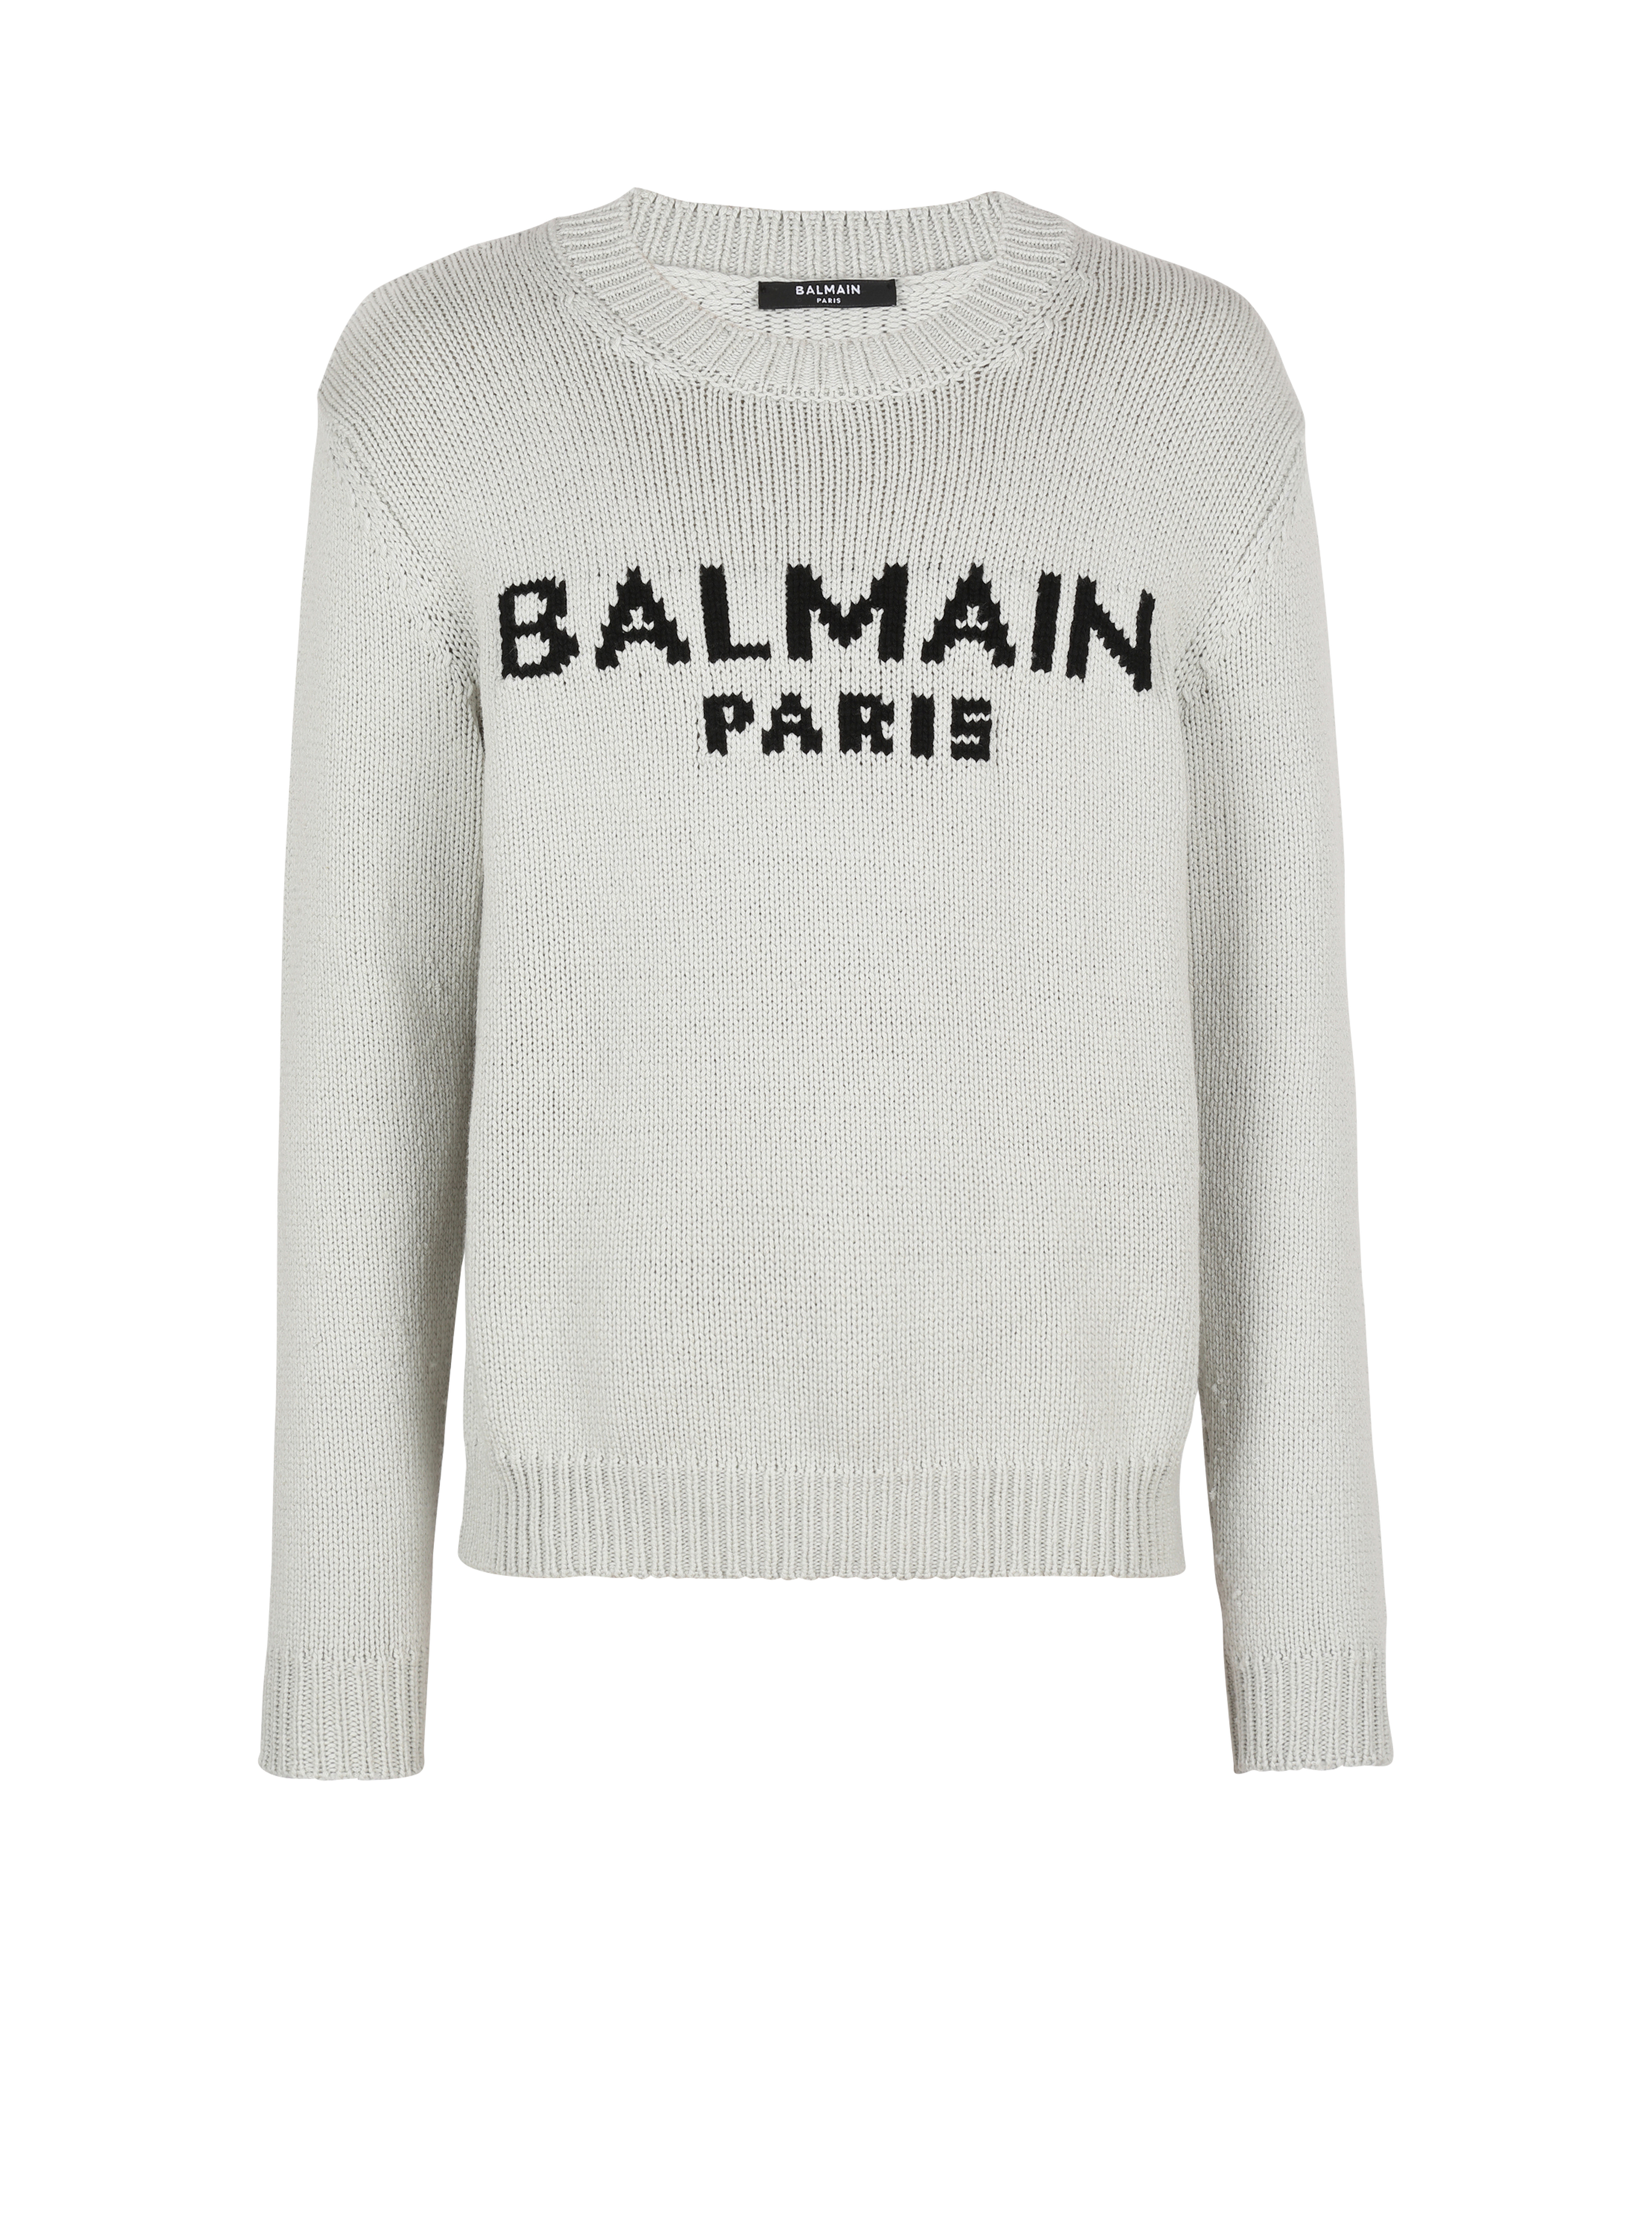 Balmain Paris标志羊毛套头衫, grey